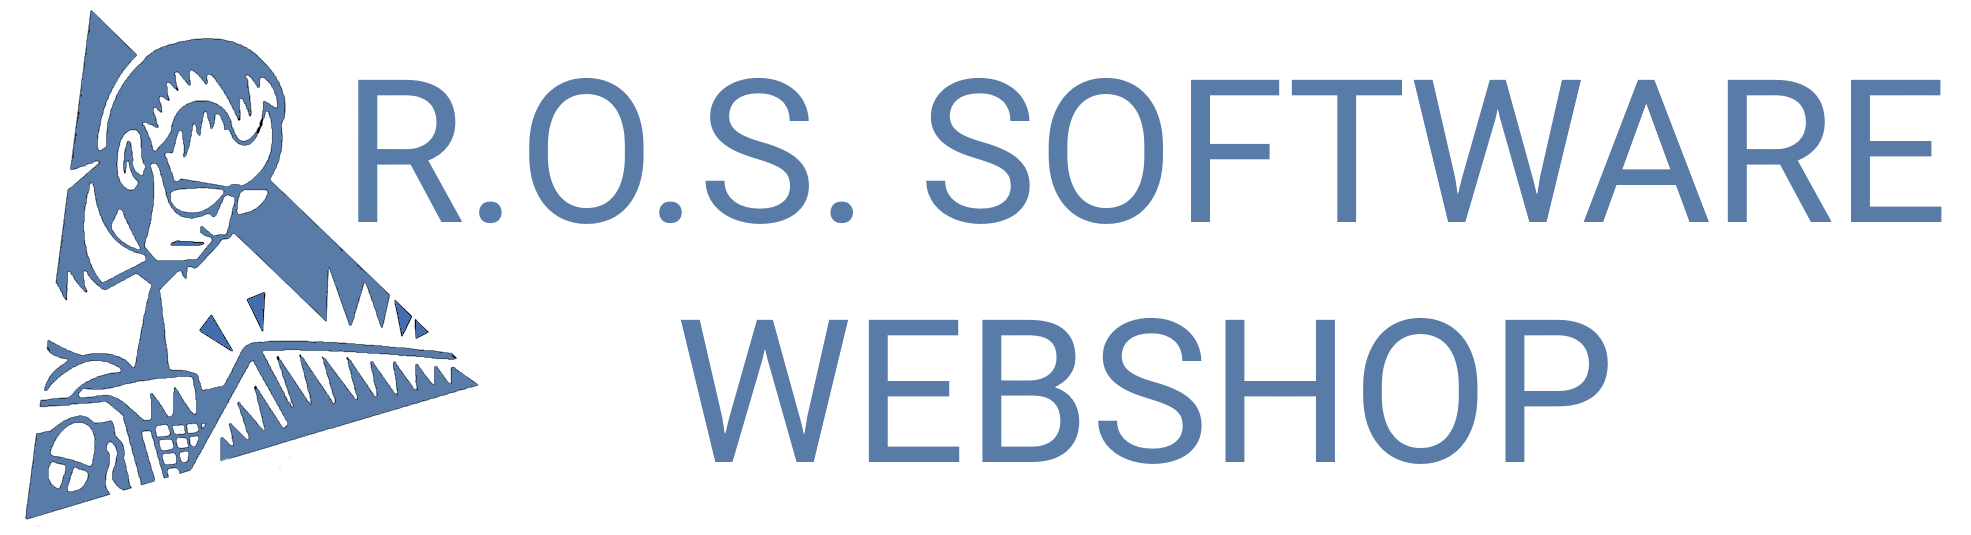 R.O.S. Software Webshop-Logo